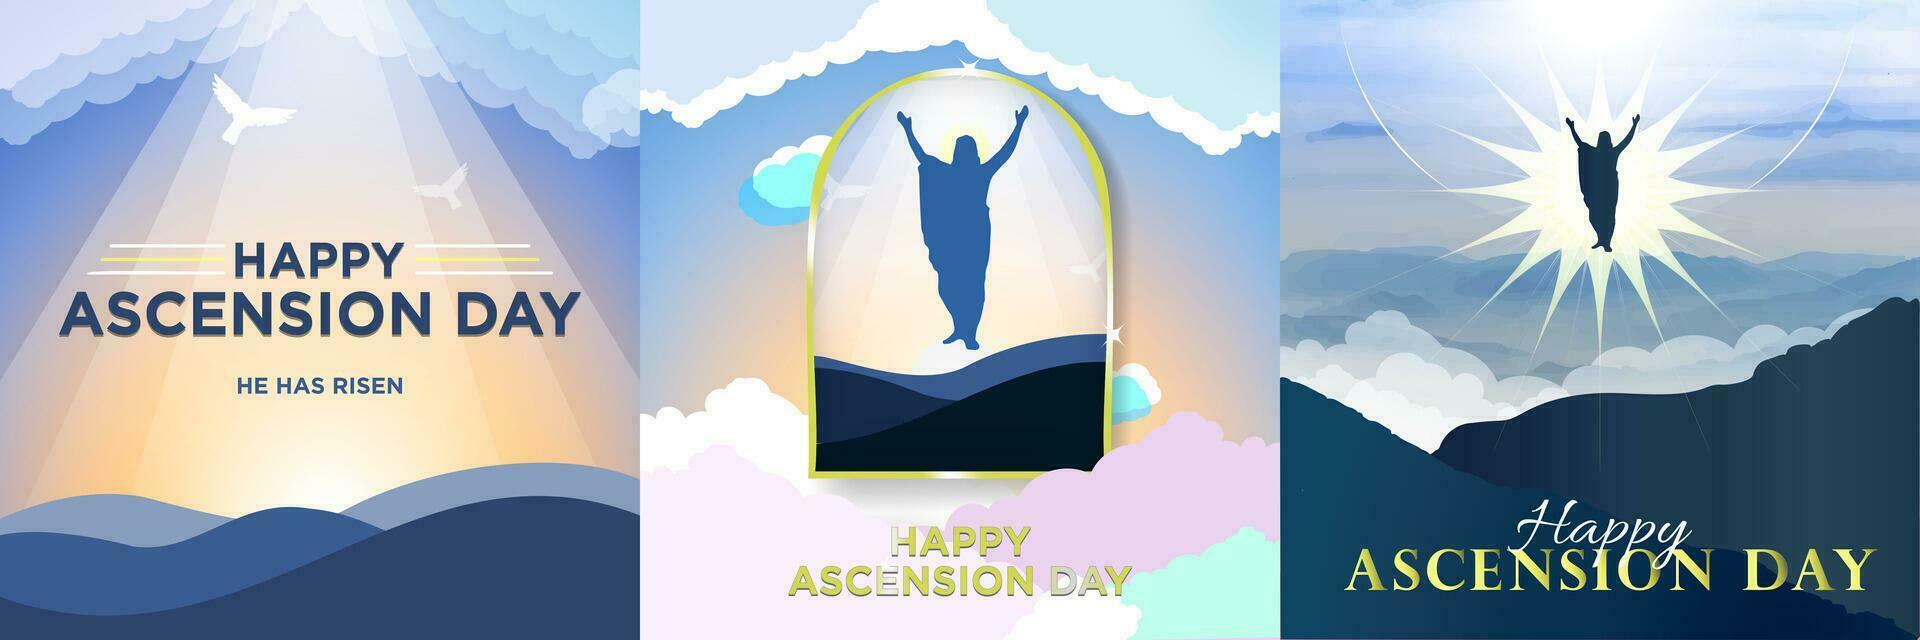 content ascension la semaine affiche ensemble. vecteur illustration de le ascension journée de Jésus Christ. Jésus silhouette en hausse à paradis.